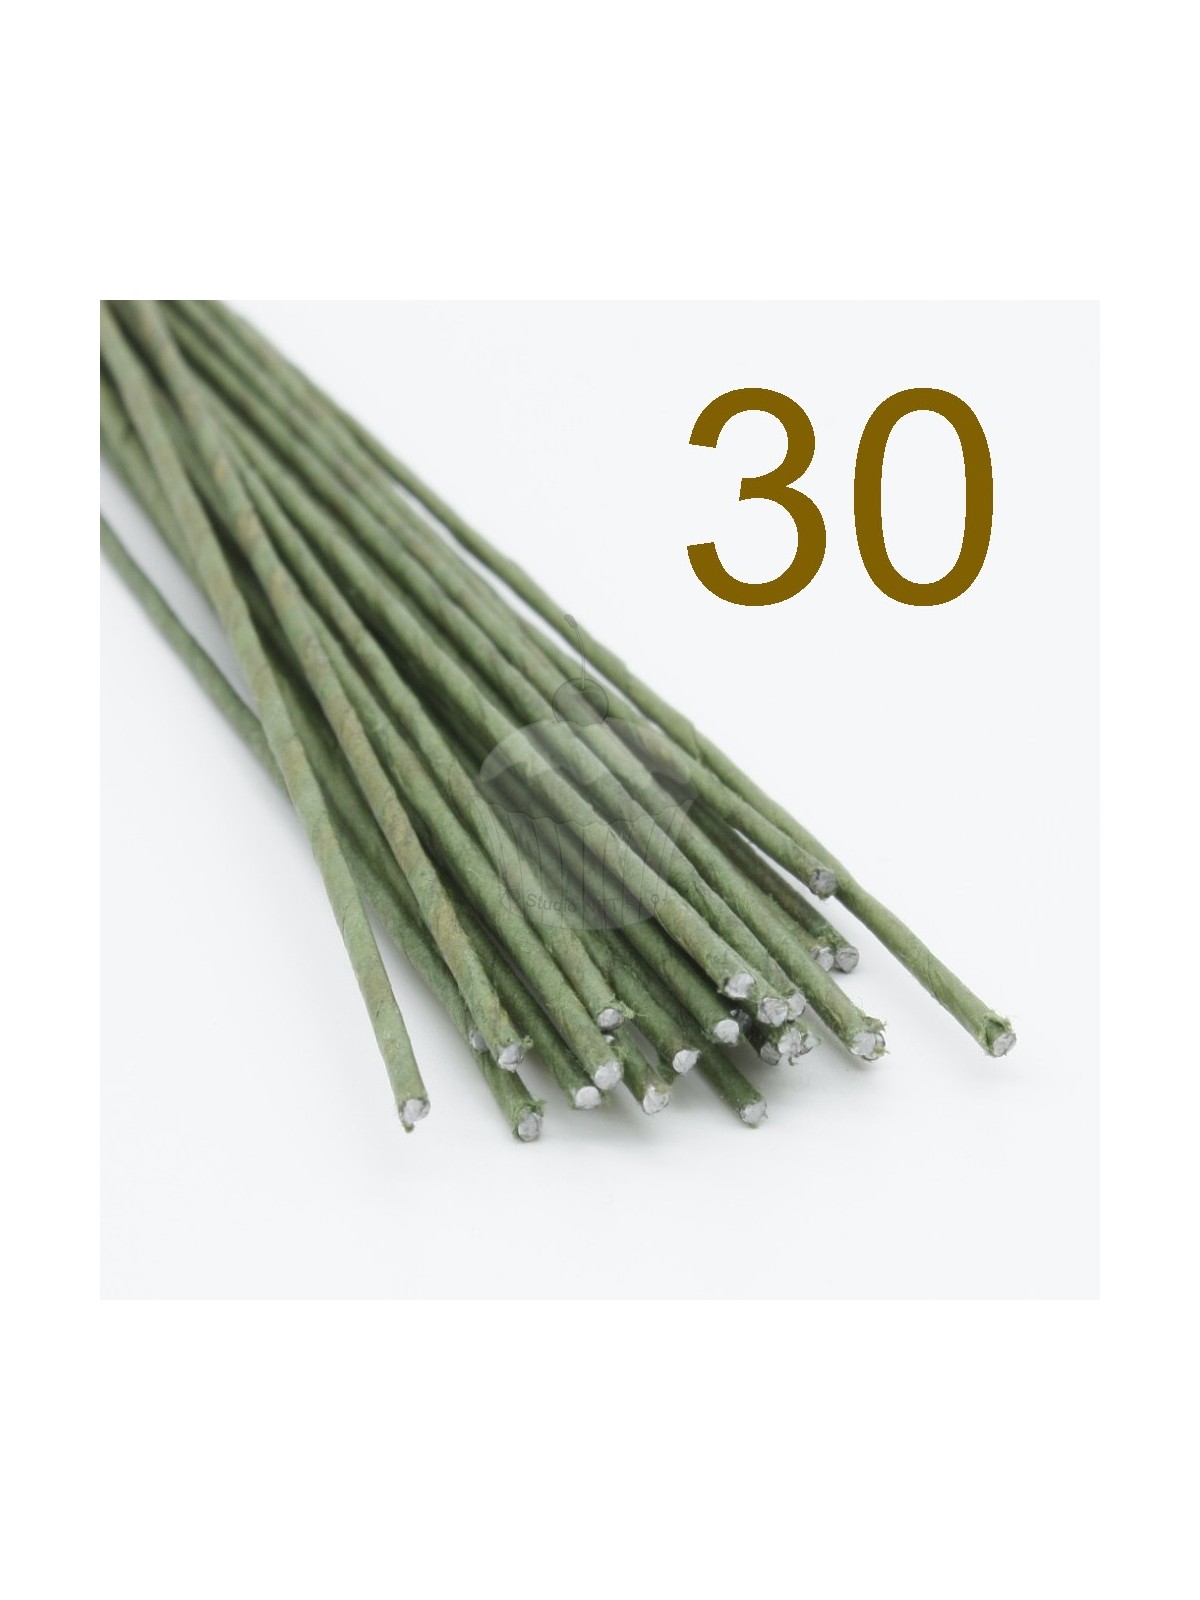 Caketools - 30 aranžovací drátky zelené - 50ks